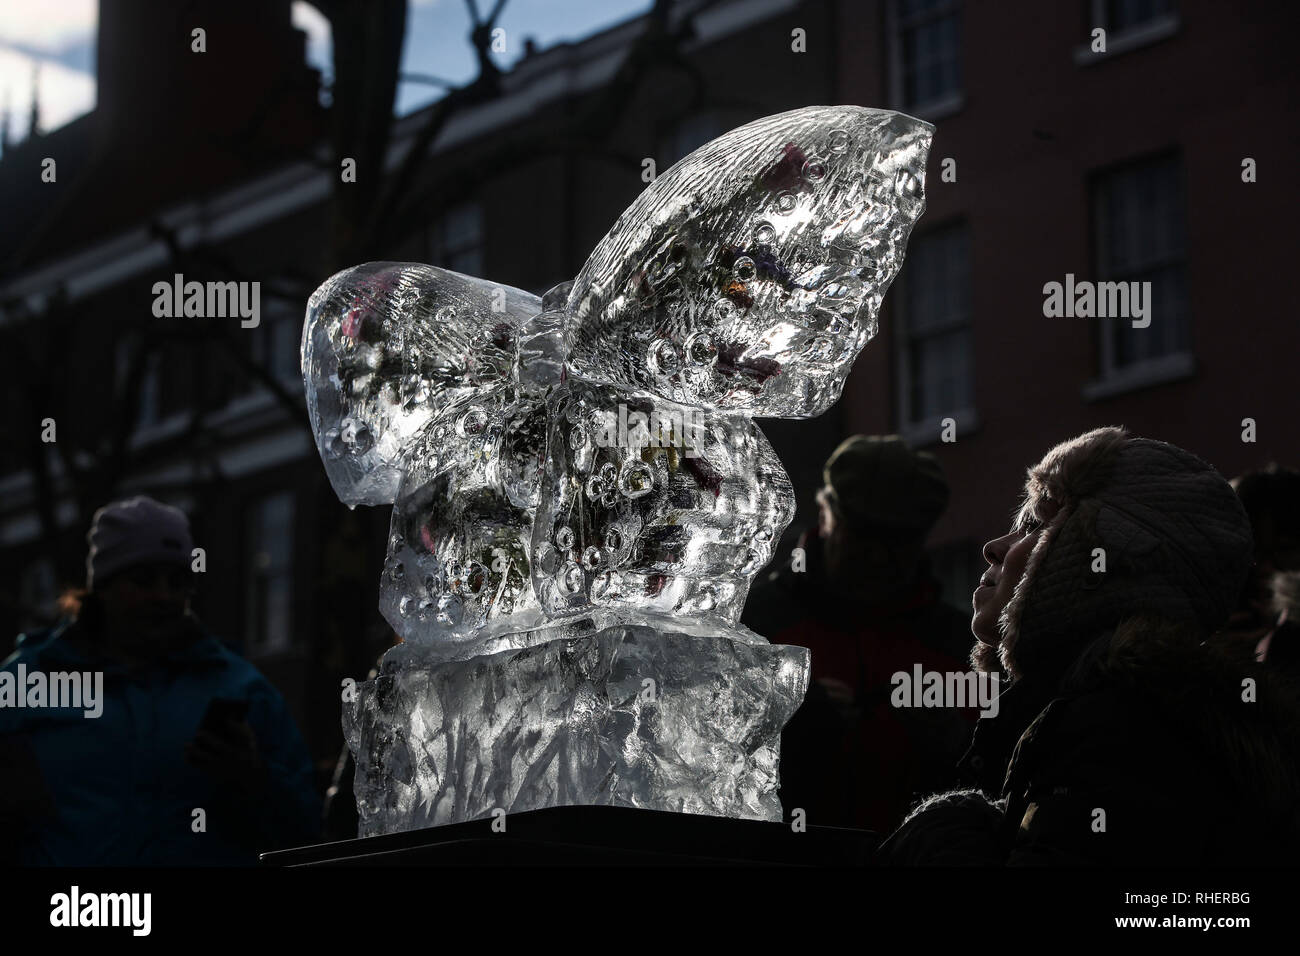 Les membres du public avec une sculpture de glace d'un papillon, une partie du sentier de glace de New York, dans le Yorkshire, après une nuit de neige hier et devraient entraîner des troubles. Banque D'Images